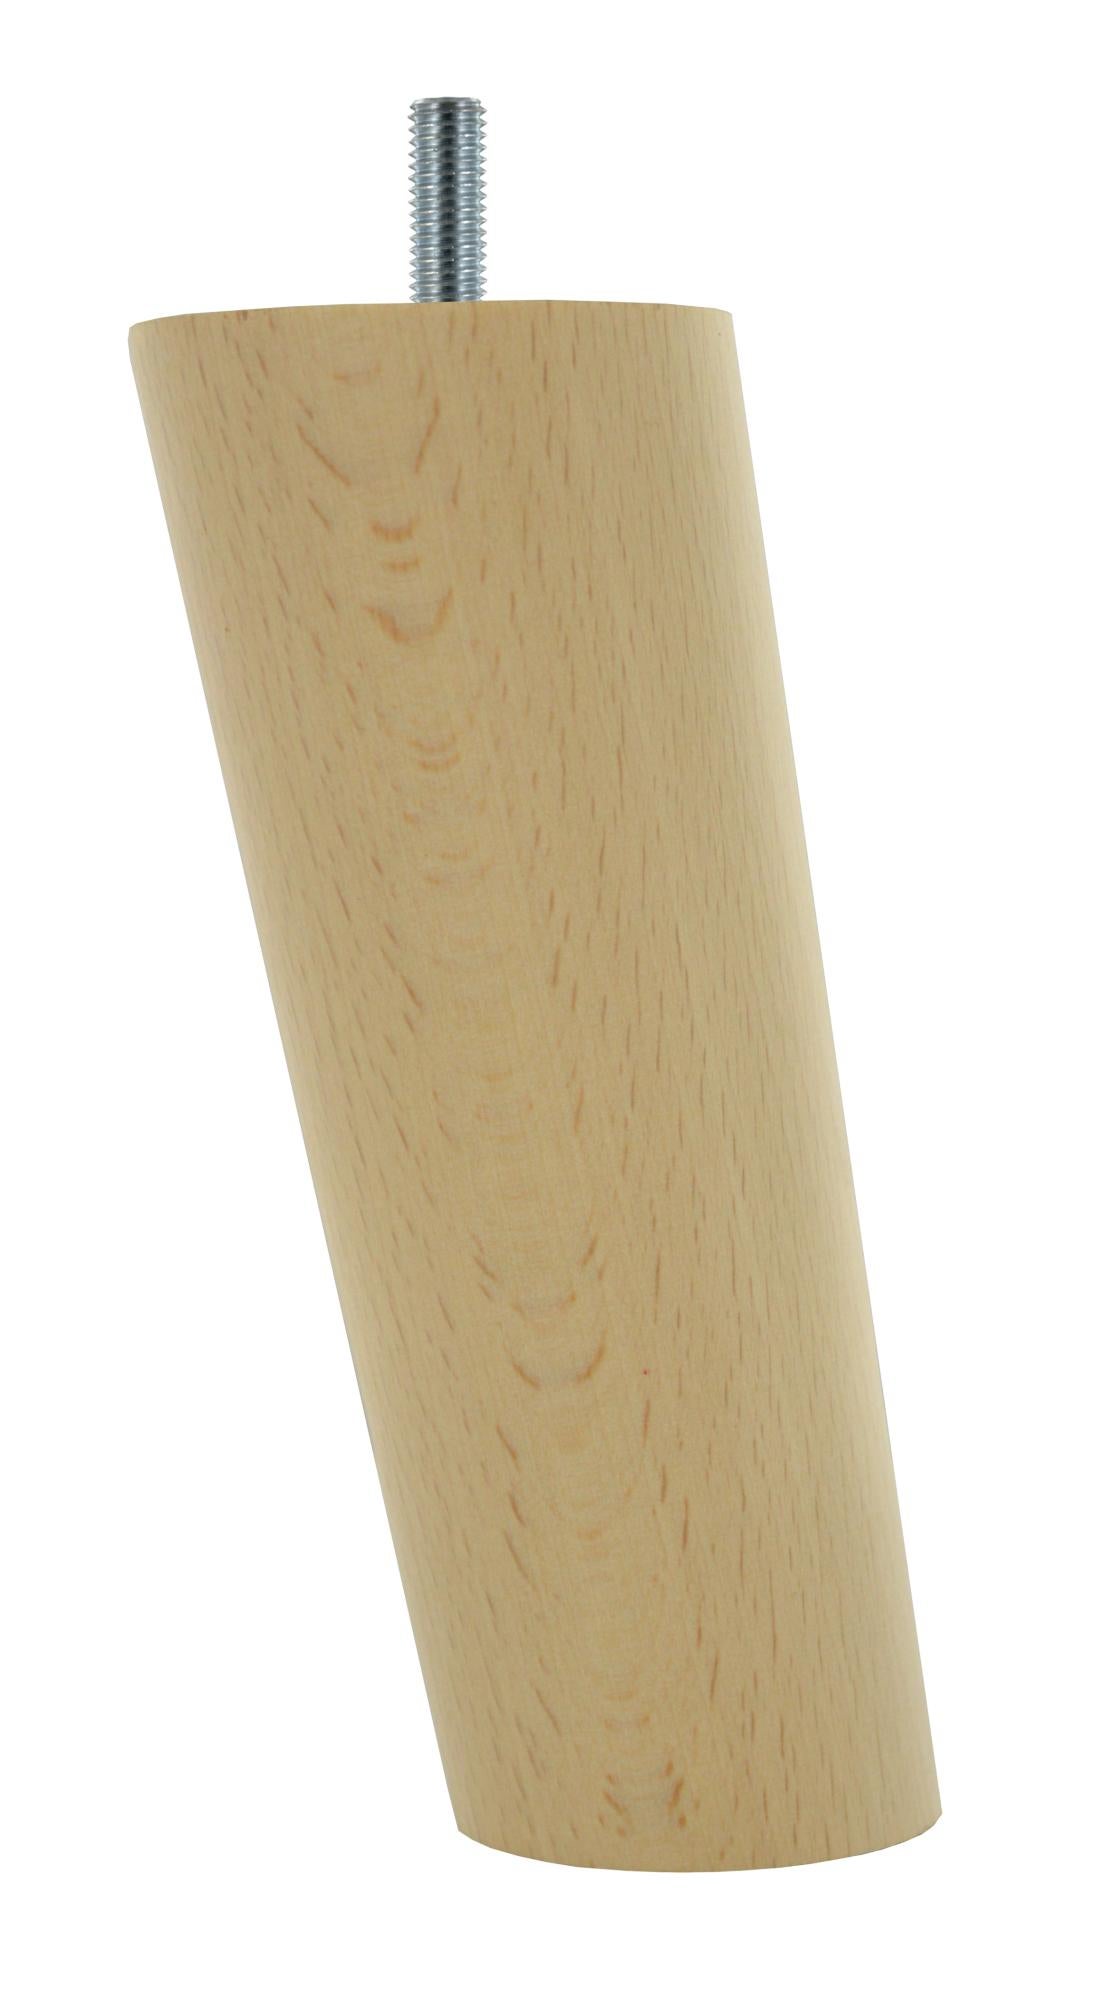 Pied de meuble conique fixe hêtre brut blanc / beige / naturels, 15 cm | Leroy Merlin